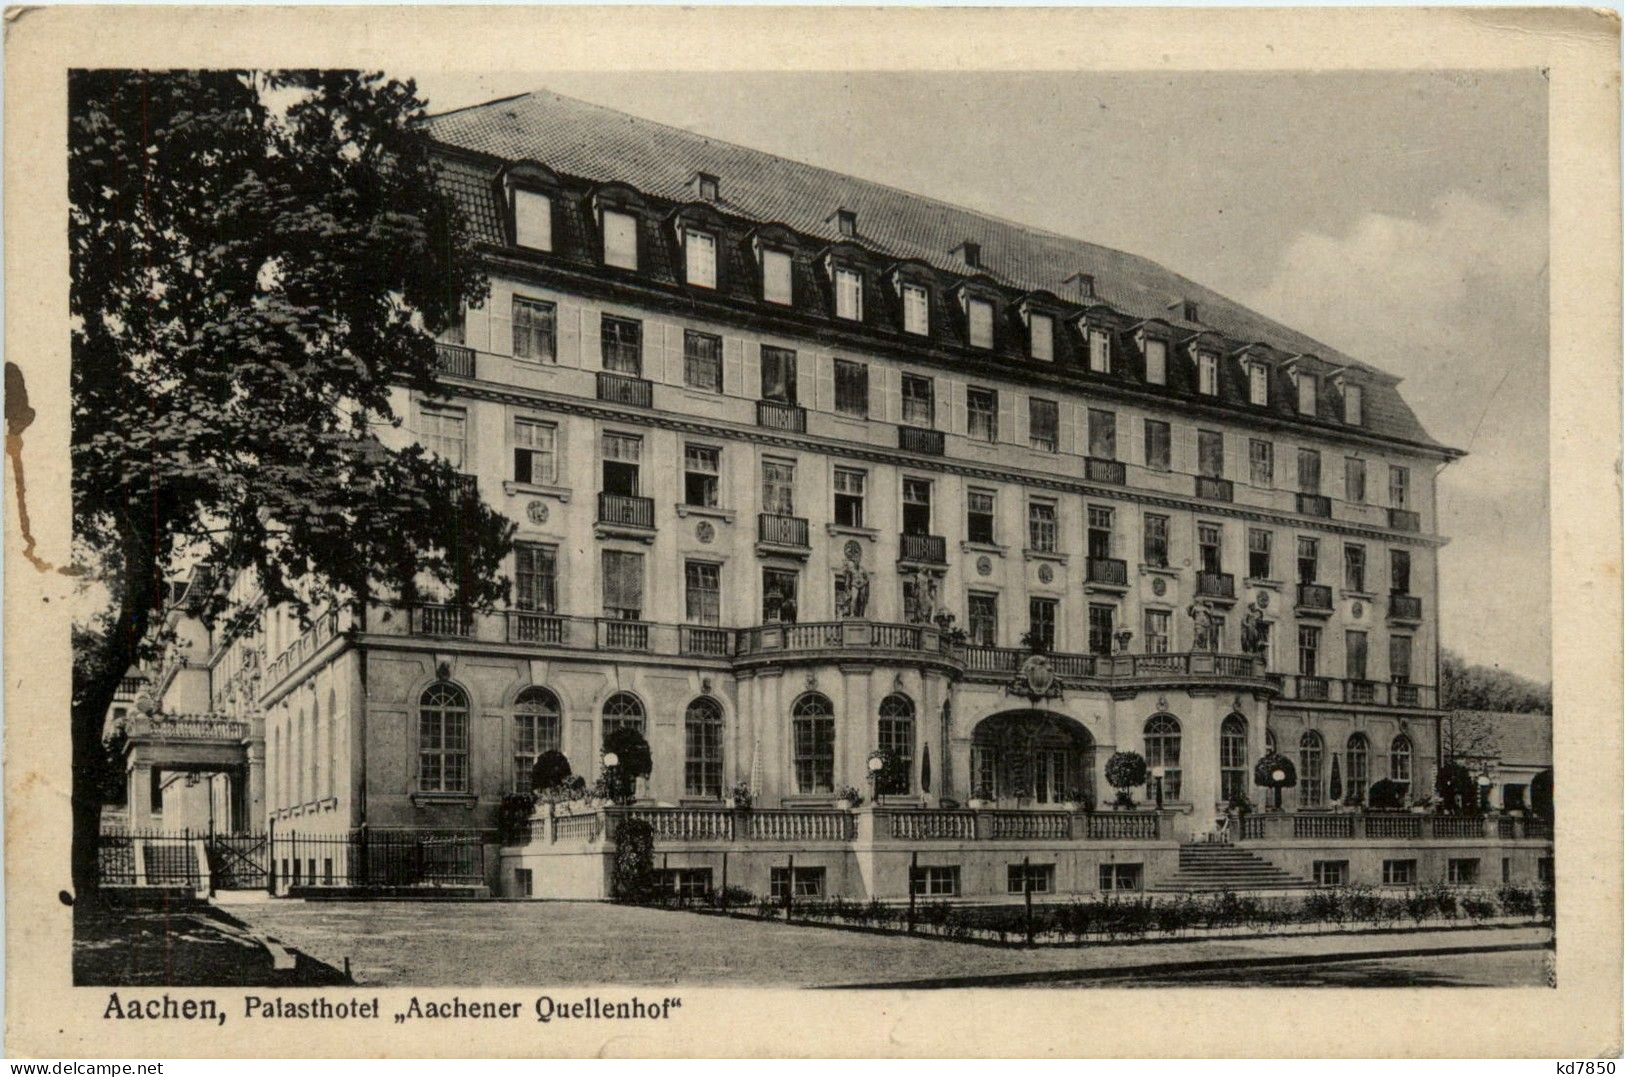 Aachen - Palasthotel Aachener Quellenhof - Aken